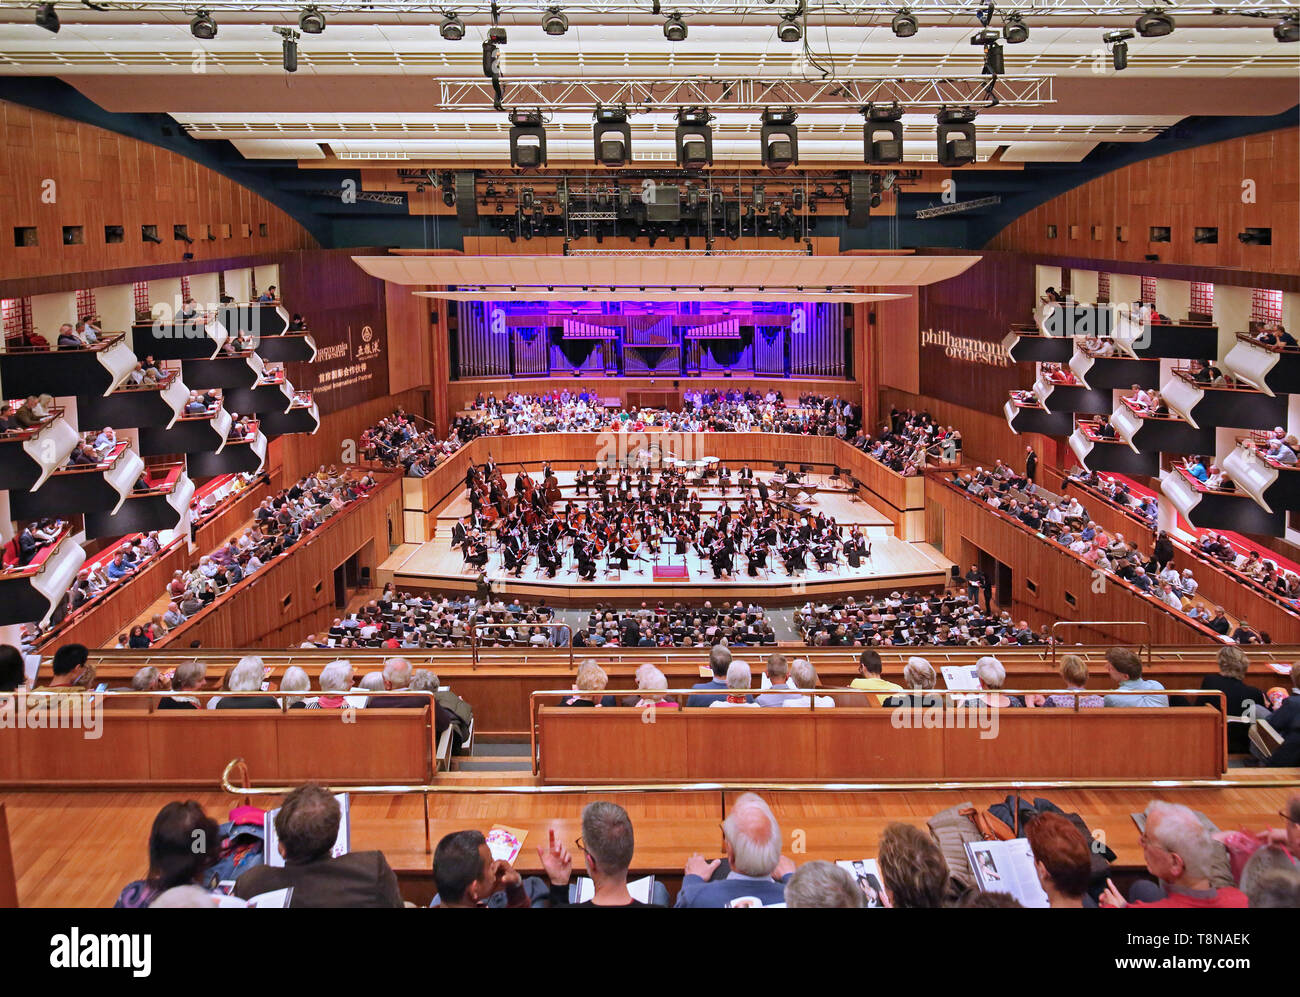 Innenraum der Royal Festival Hall auf der Londoner South Bank. 1951 eröffnet, 2007 renoviert. Orchester auf der Bühne, das Publikum sitzt. Stockfoto